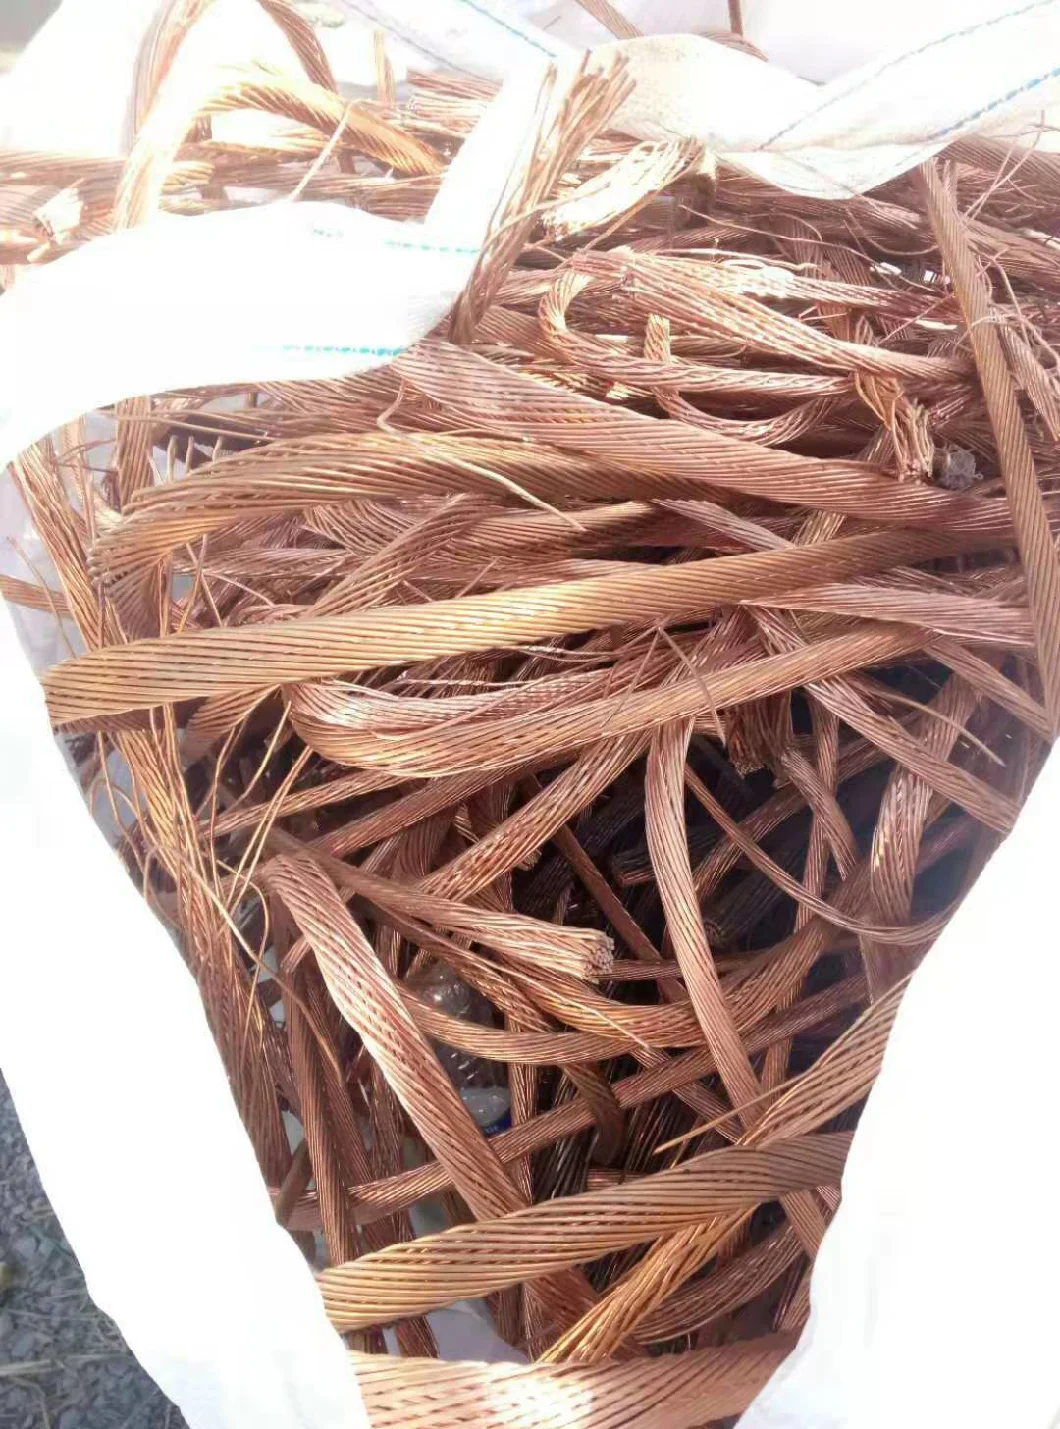 99.99% Copper Metal Scrap/Copper Scrap Wire/Copper Wire Scrap Made in China